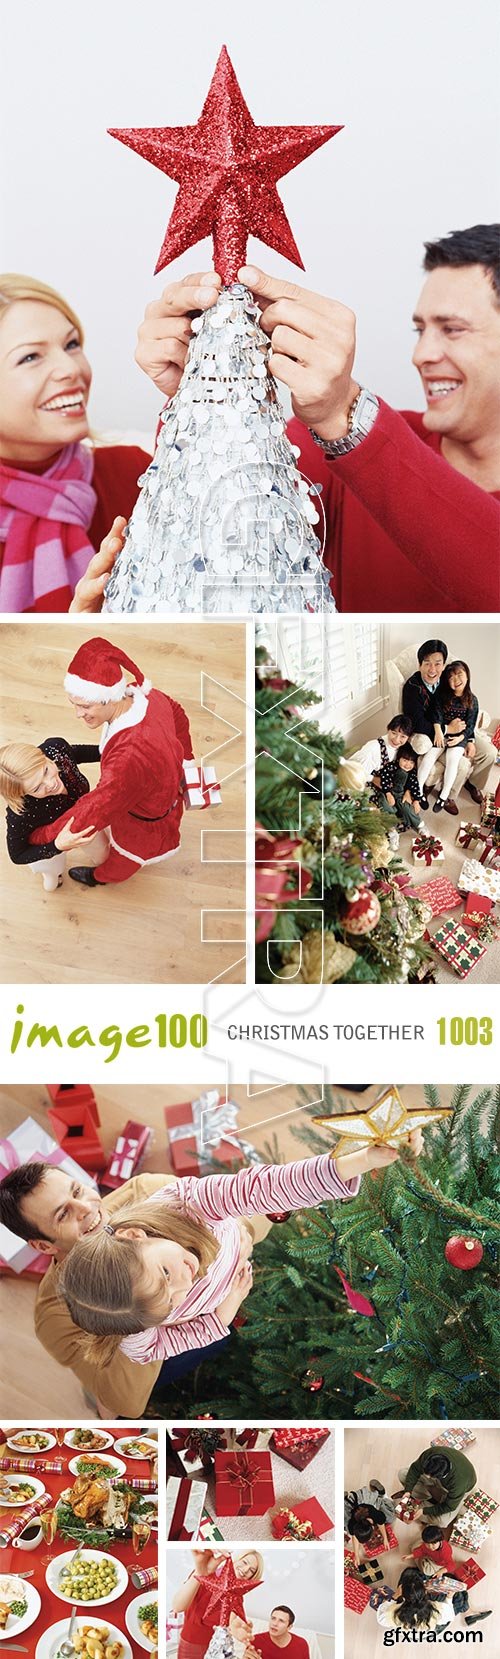 Image100 Vol.1003 Christmas Together